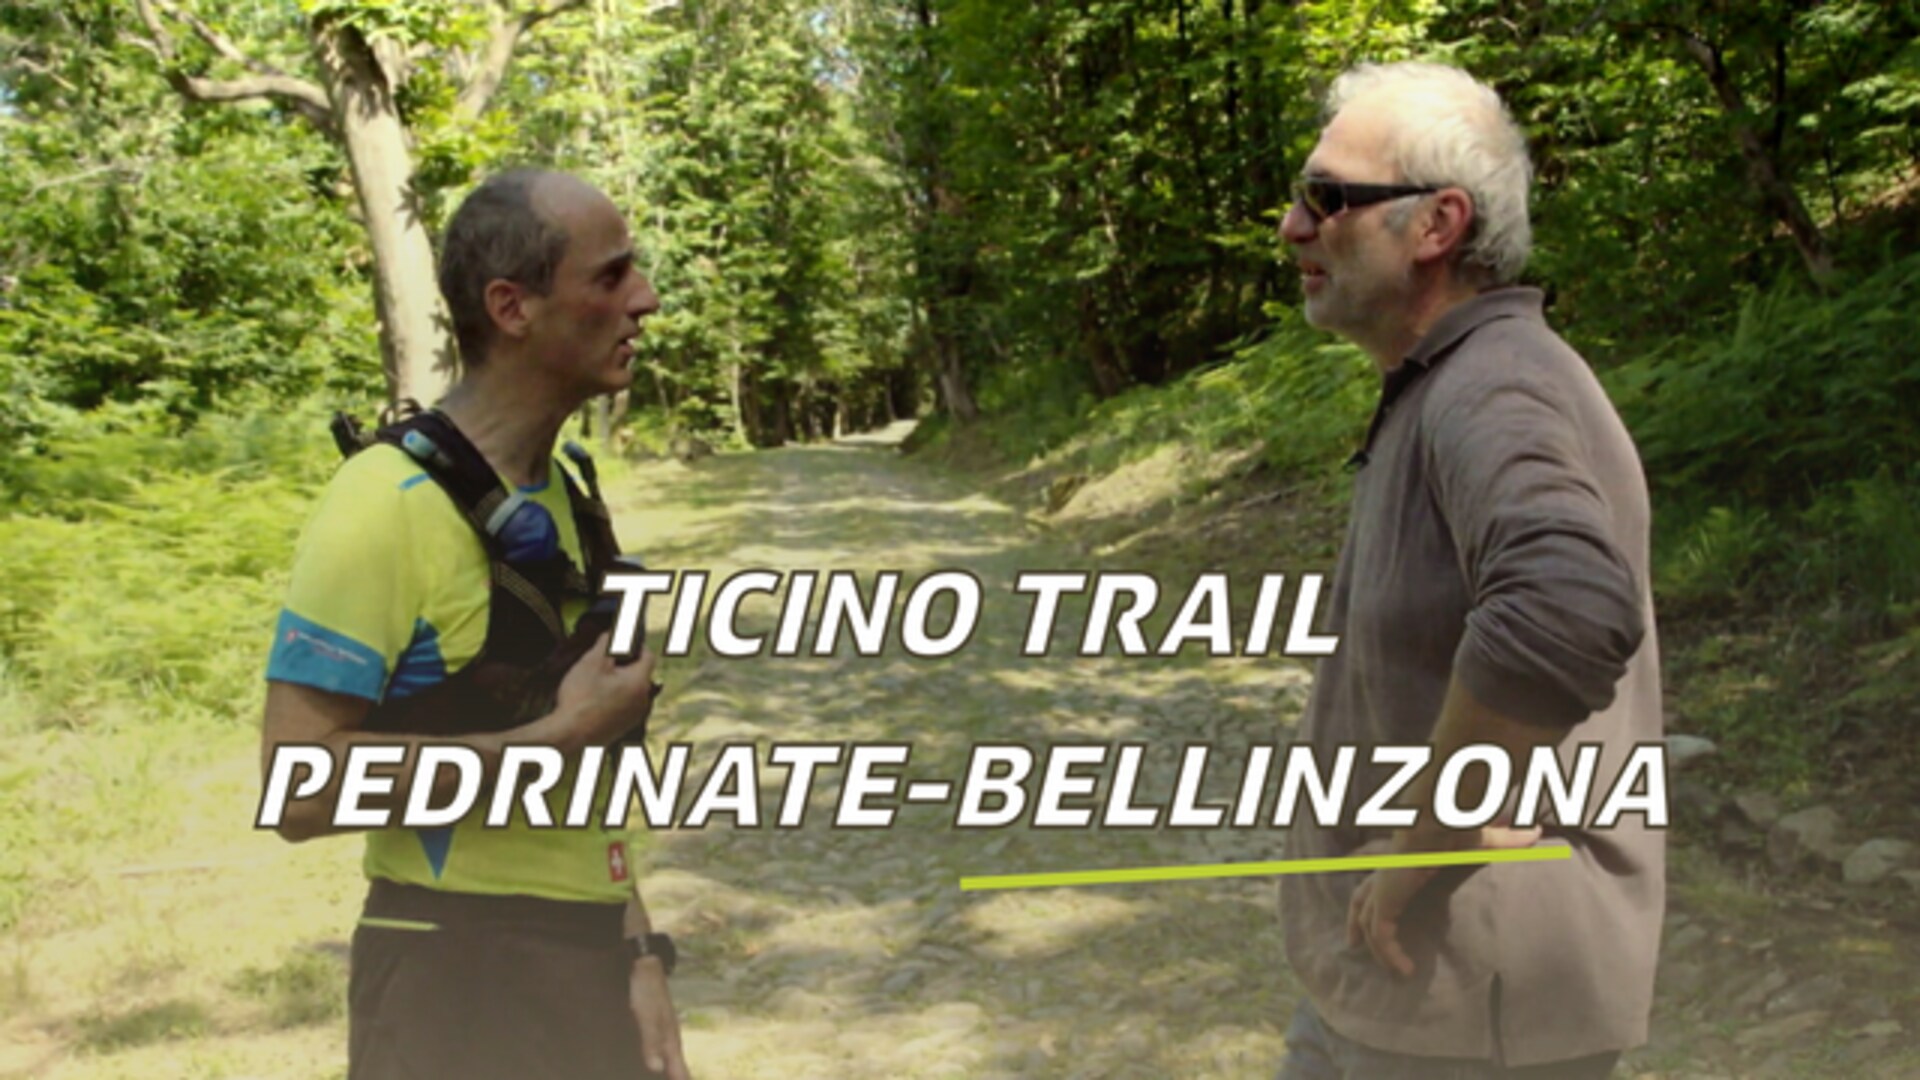 Ticino Trail: Pedrinate - Bellinzona